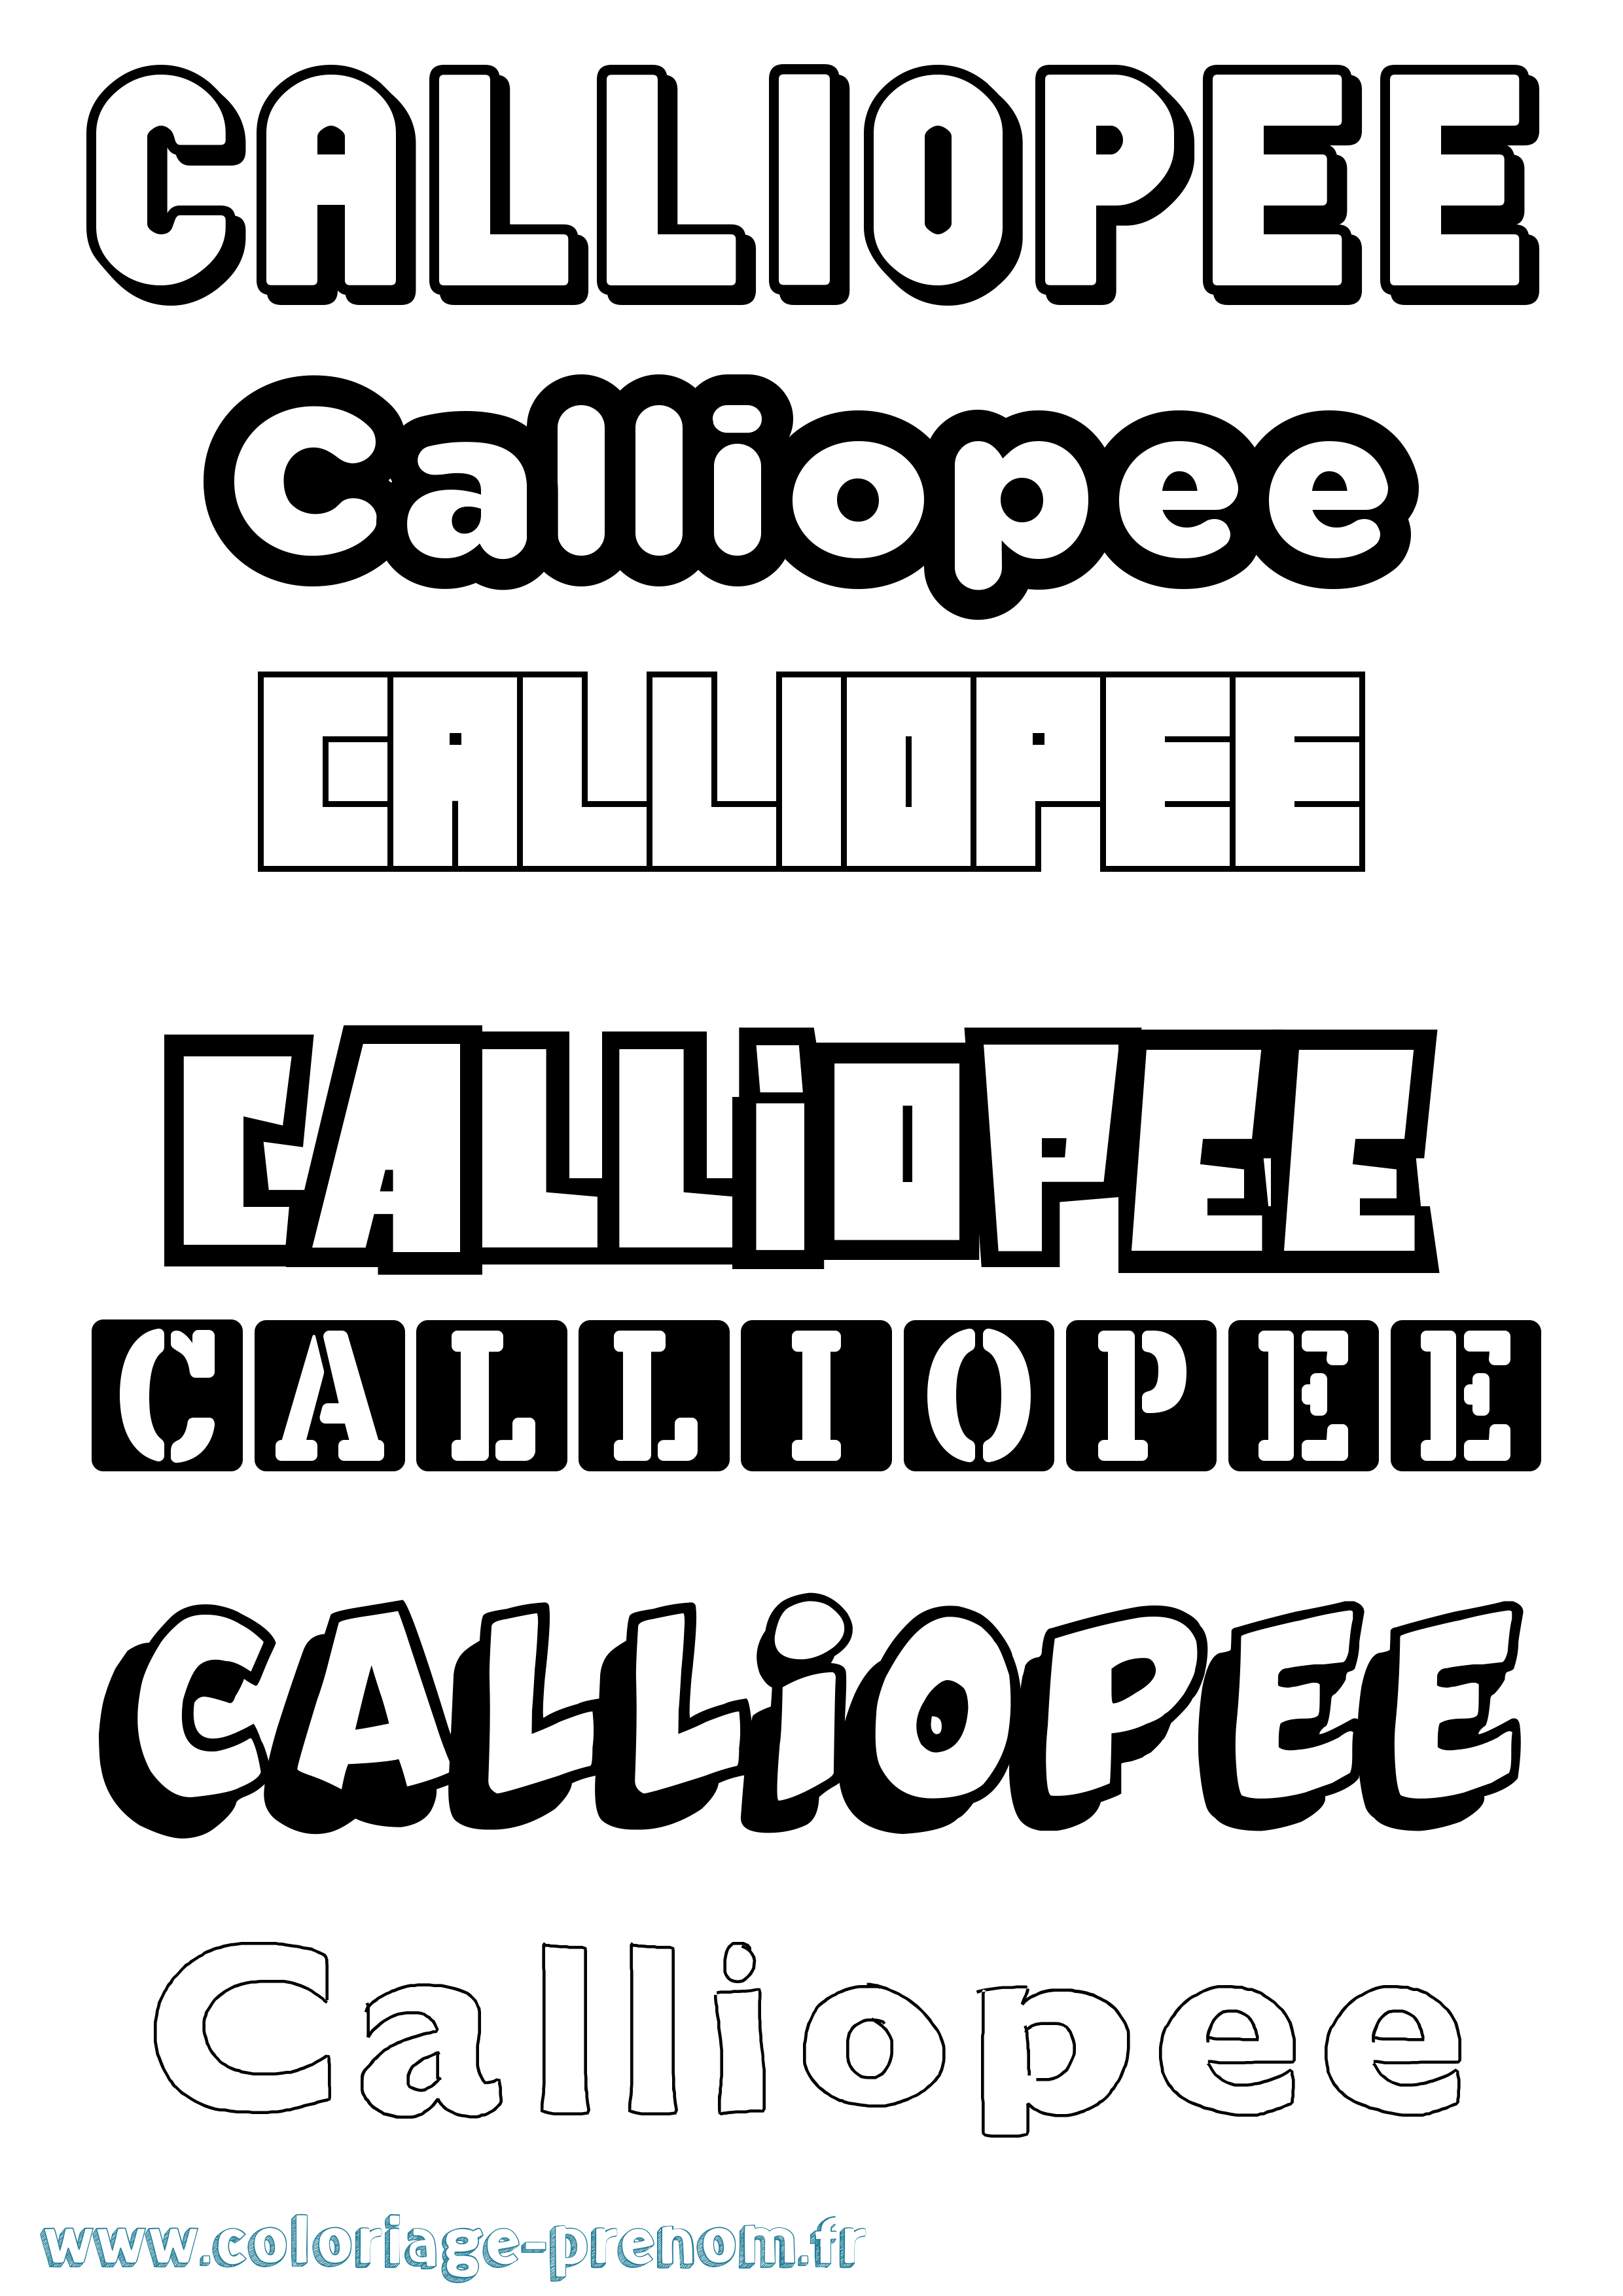 Coloriage prénom Calliopee Simple